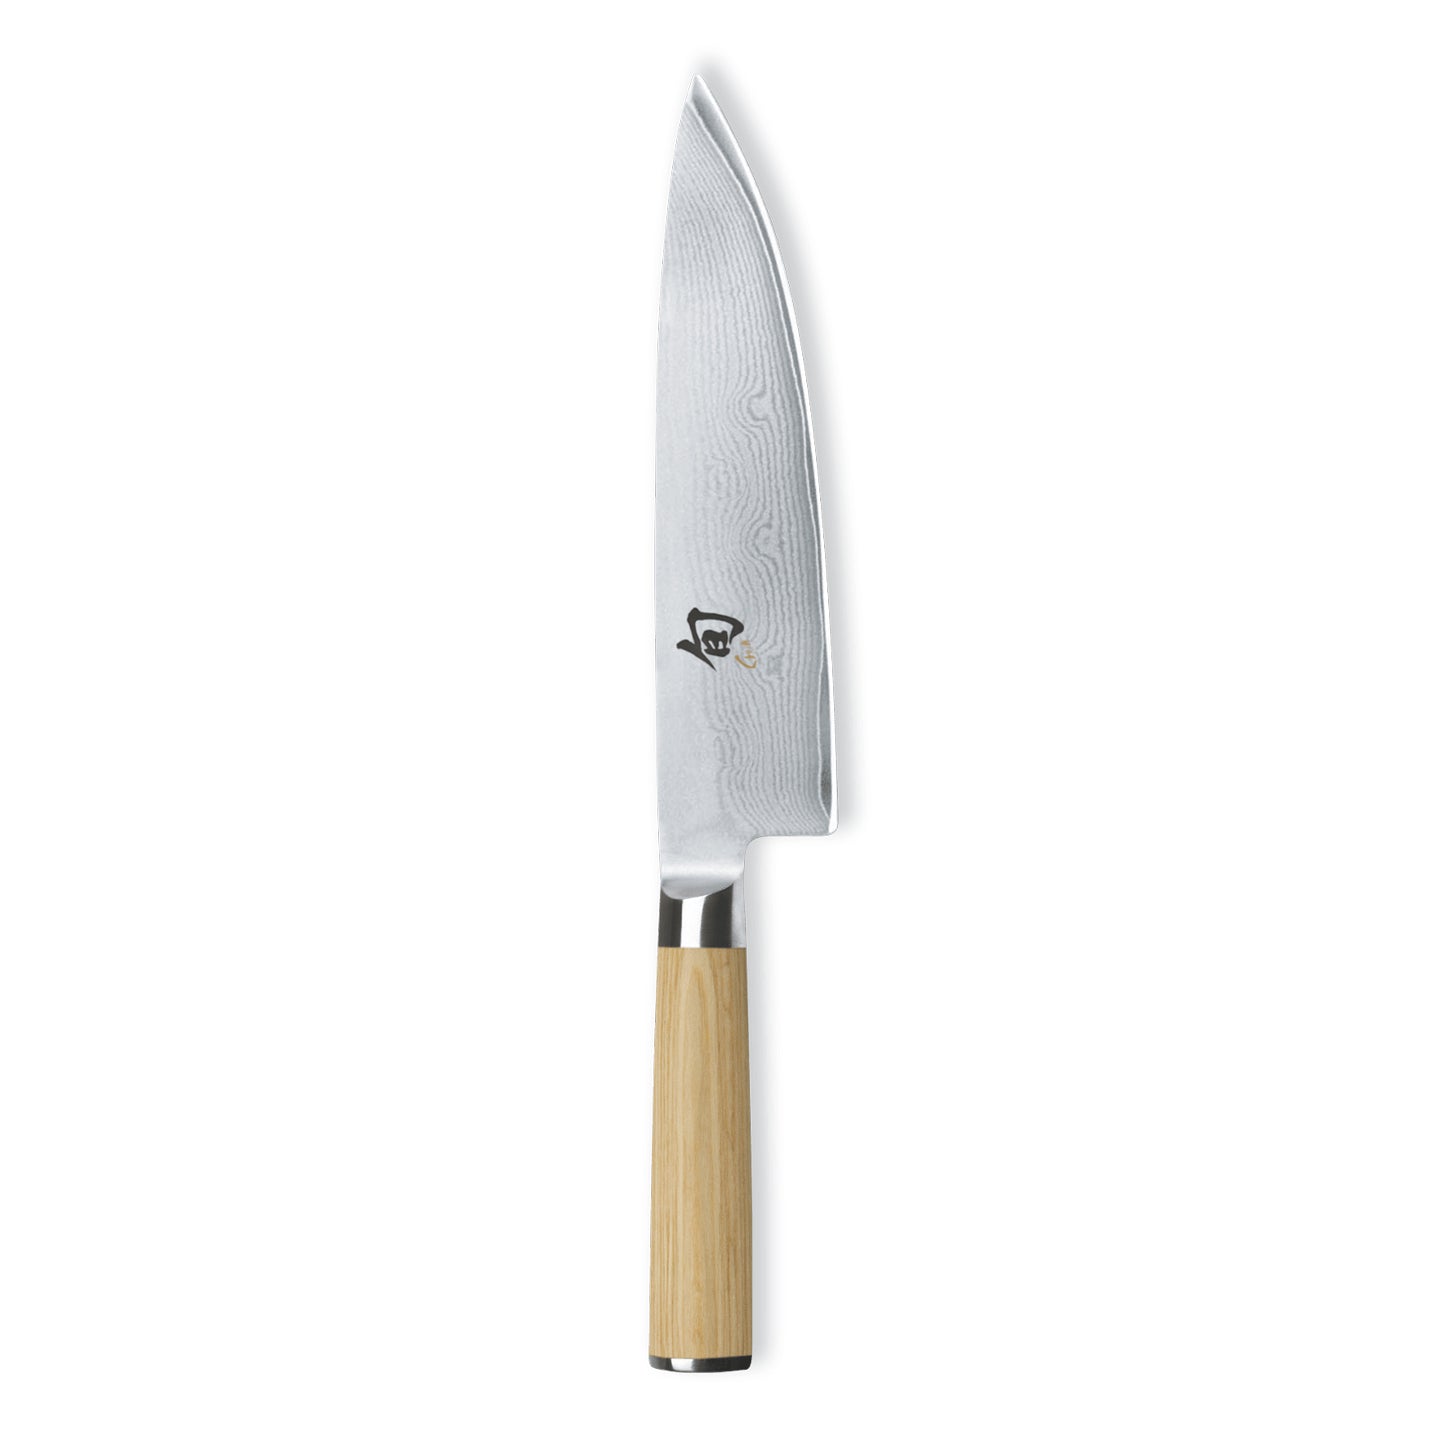 Kai Shun Classic Chef's Knife / 20cm / White